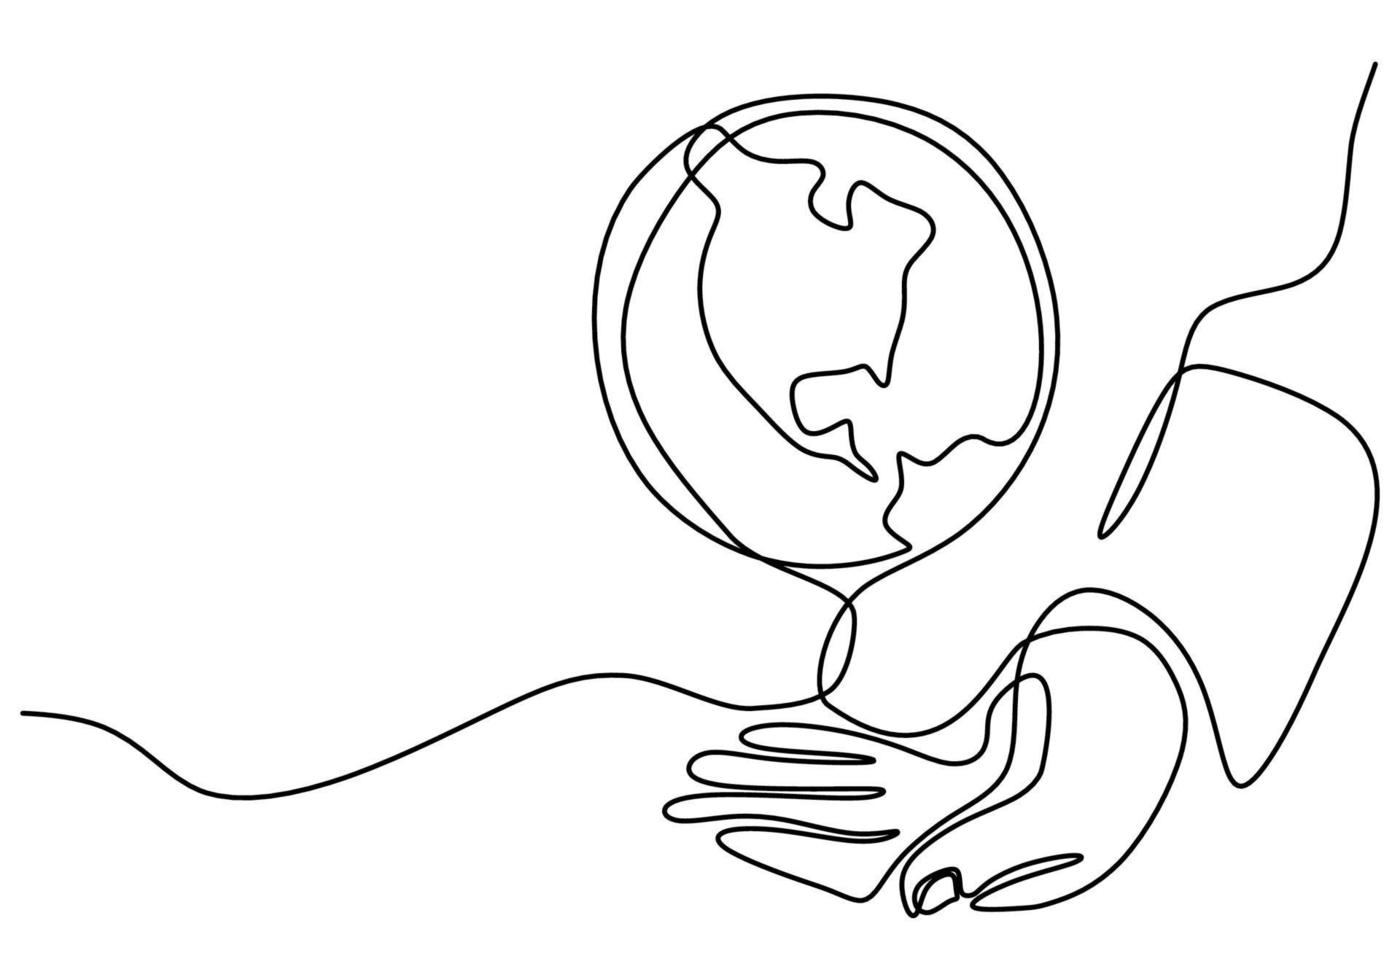 contínuo um desenho de linha de mãos segurando um globo terrestre isolado no fundo branco. tema do dia da terra. uma mão humana segurando o projeto do esboço desenhado do mundo planeta Terra contorno mão. ilustração vetorial vetor